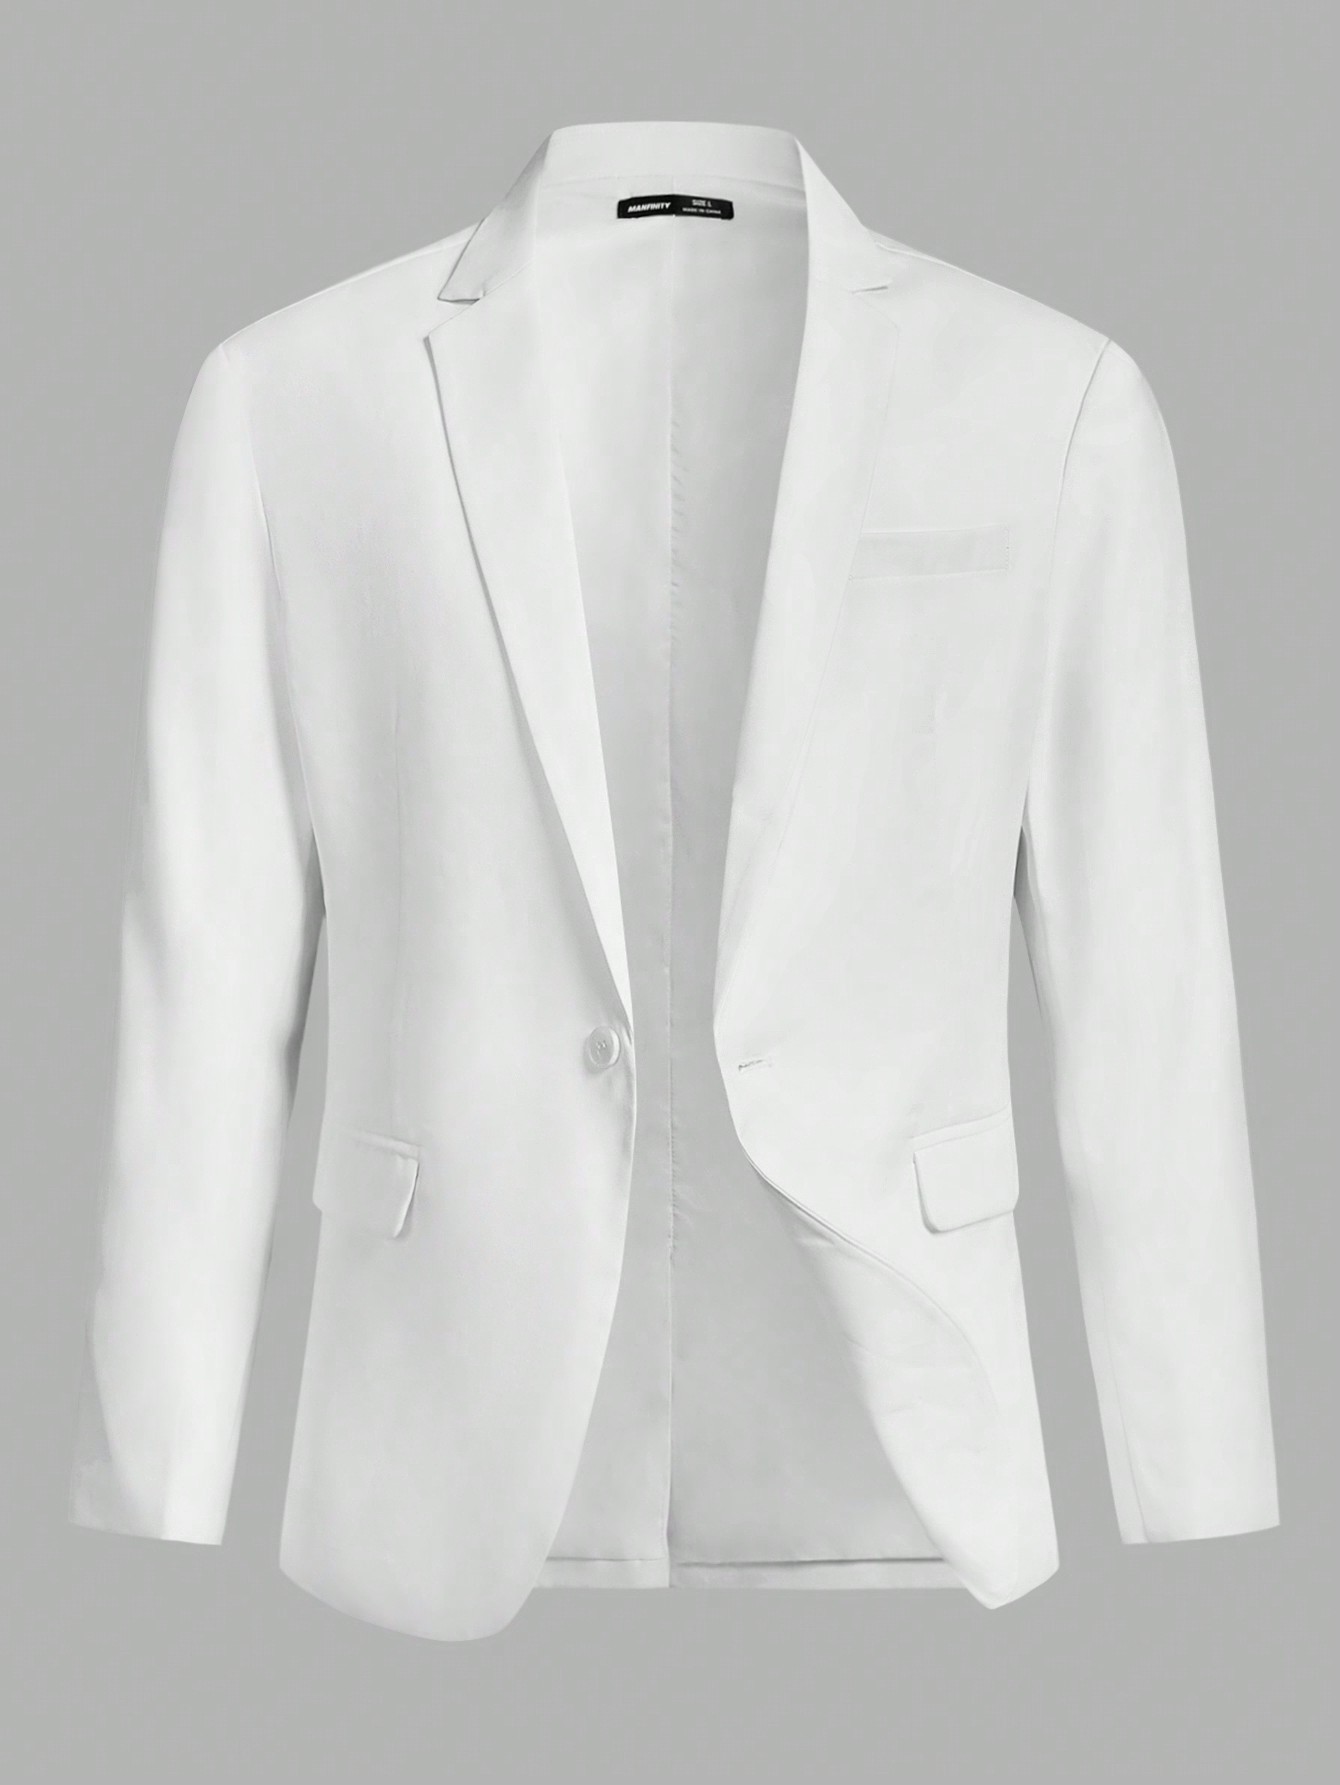 Мужской пиджак с лацканами с длинными рукавами Manfinity Homme, белый